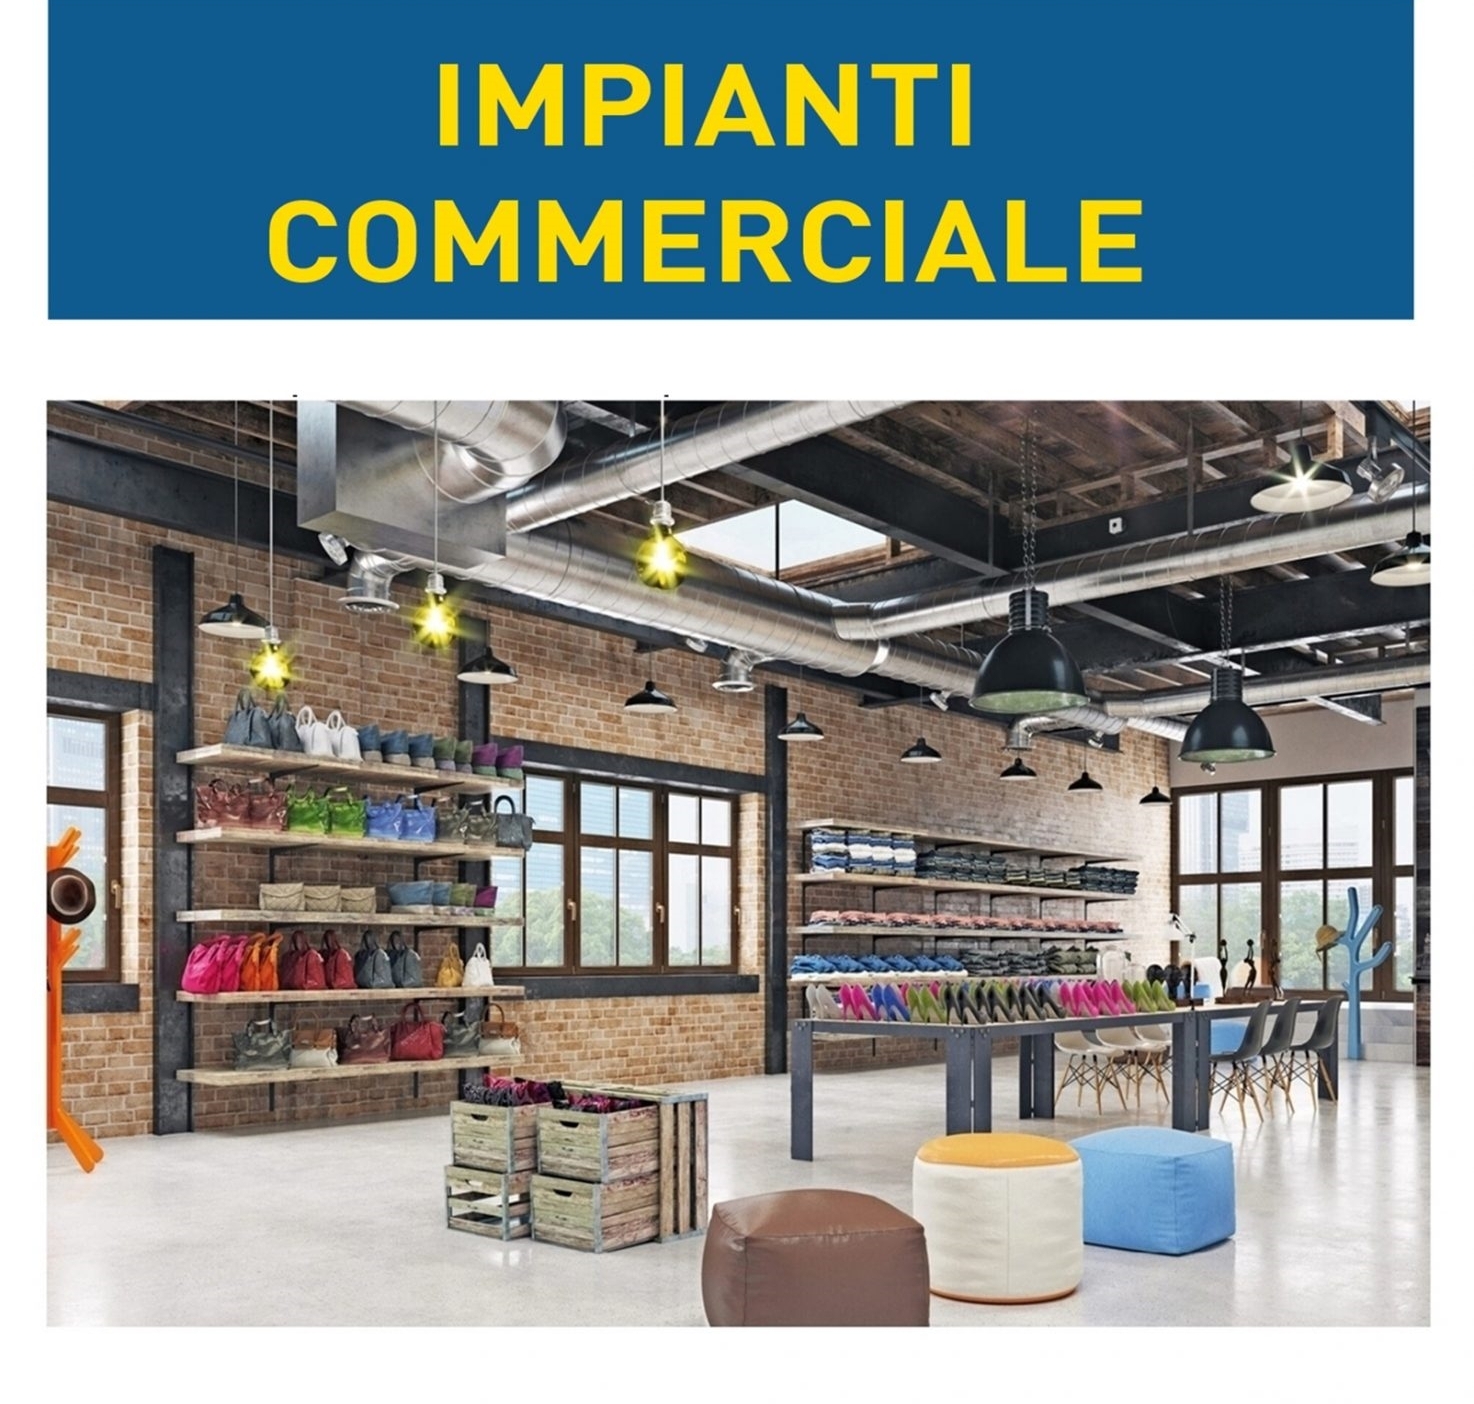 <p style="text-align: center;">Impianti Canalizzati Panasonic Milano